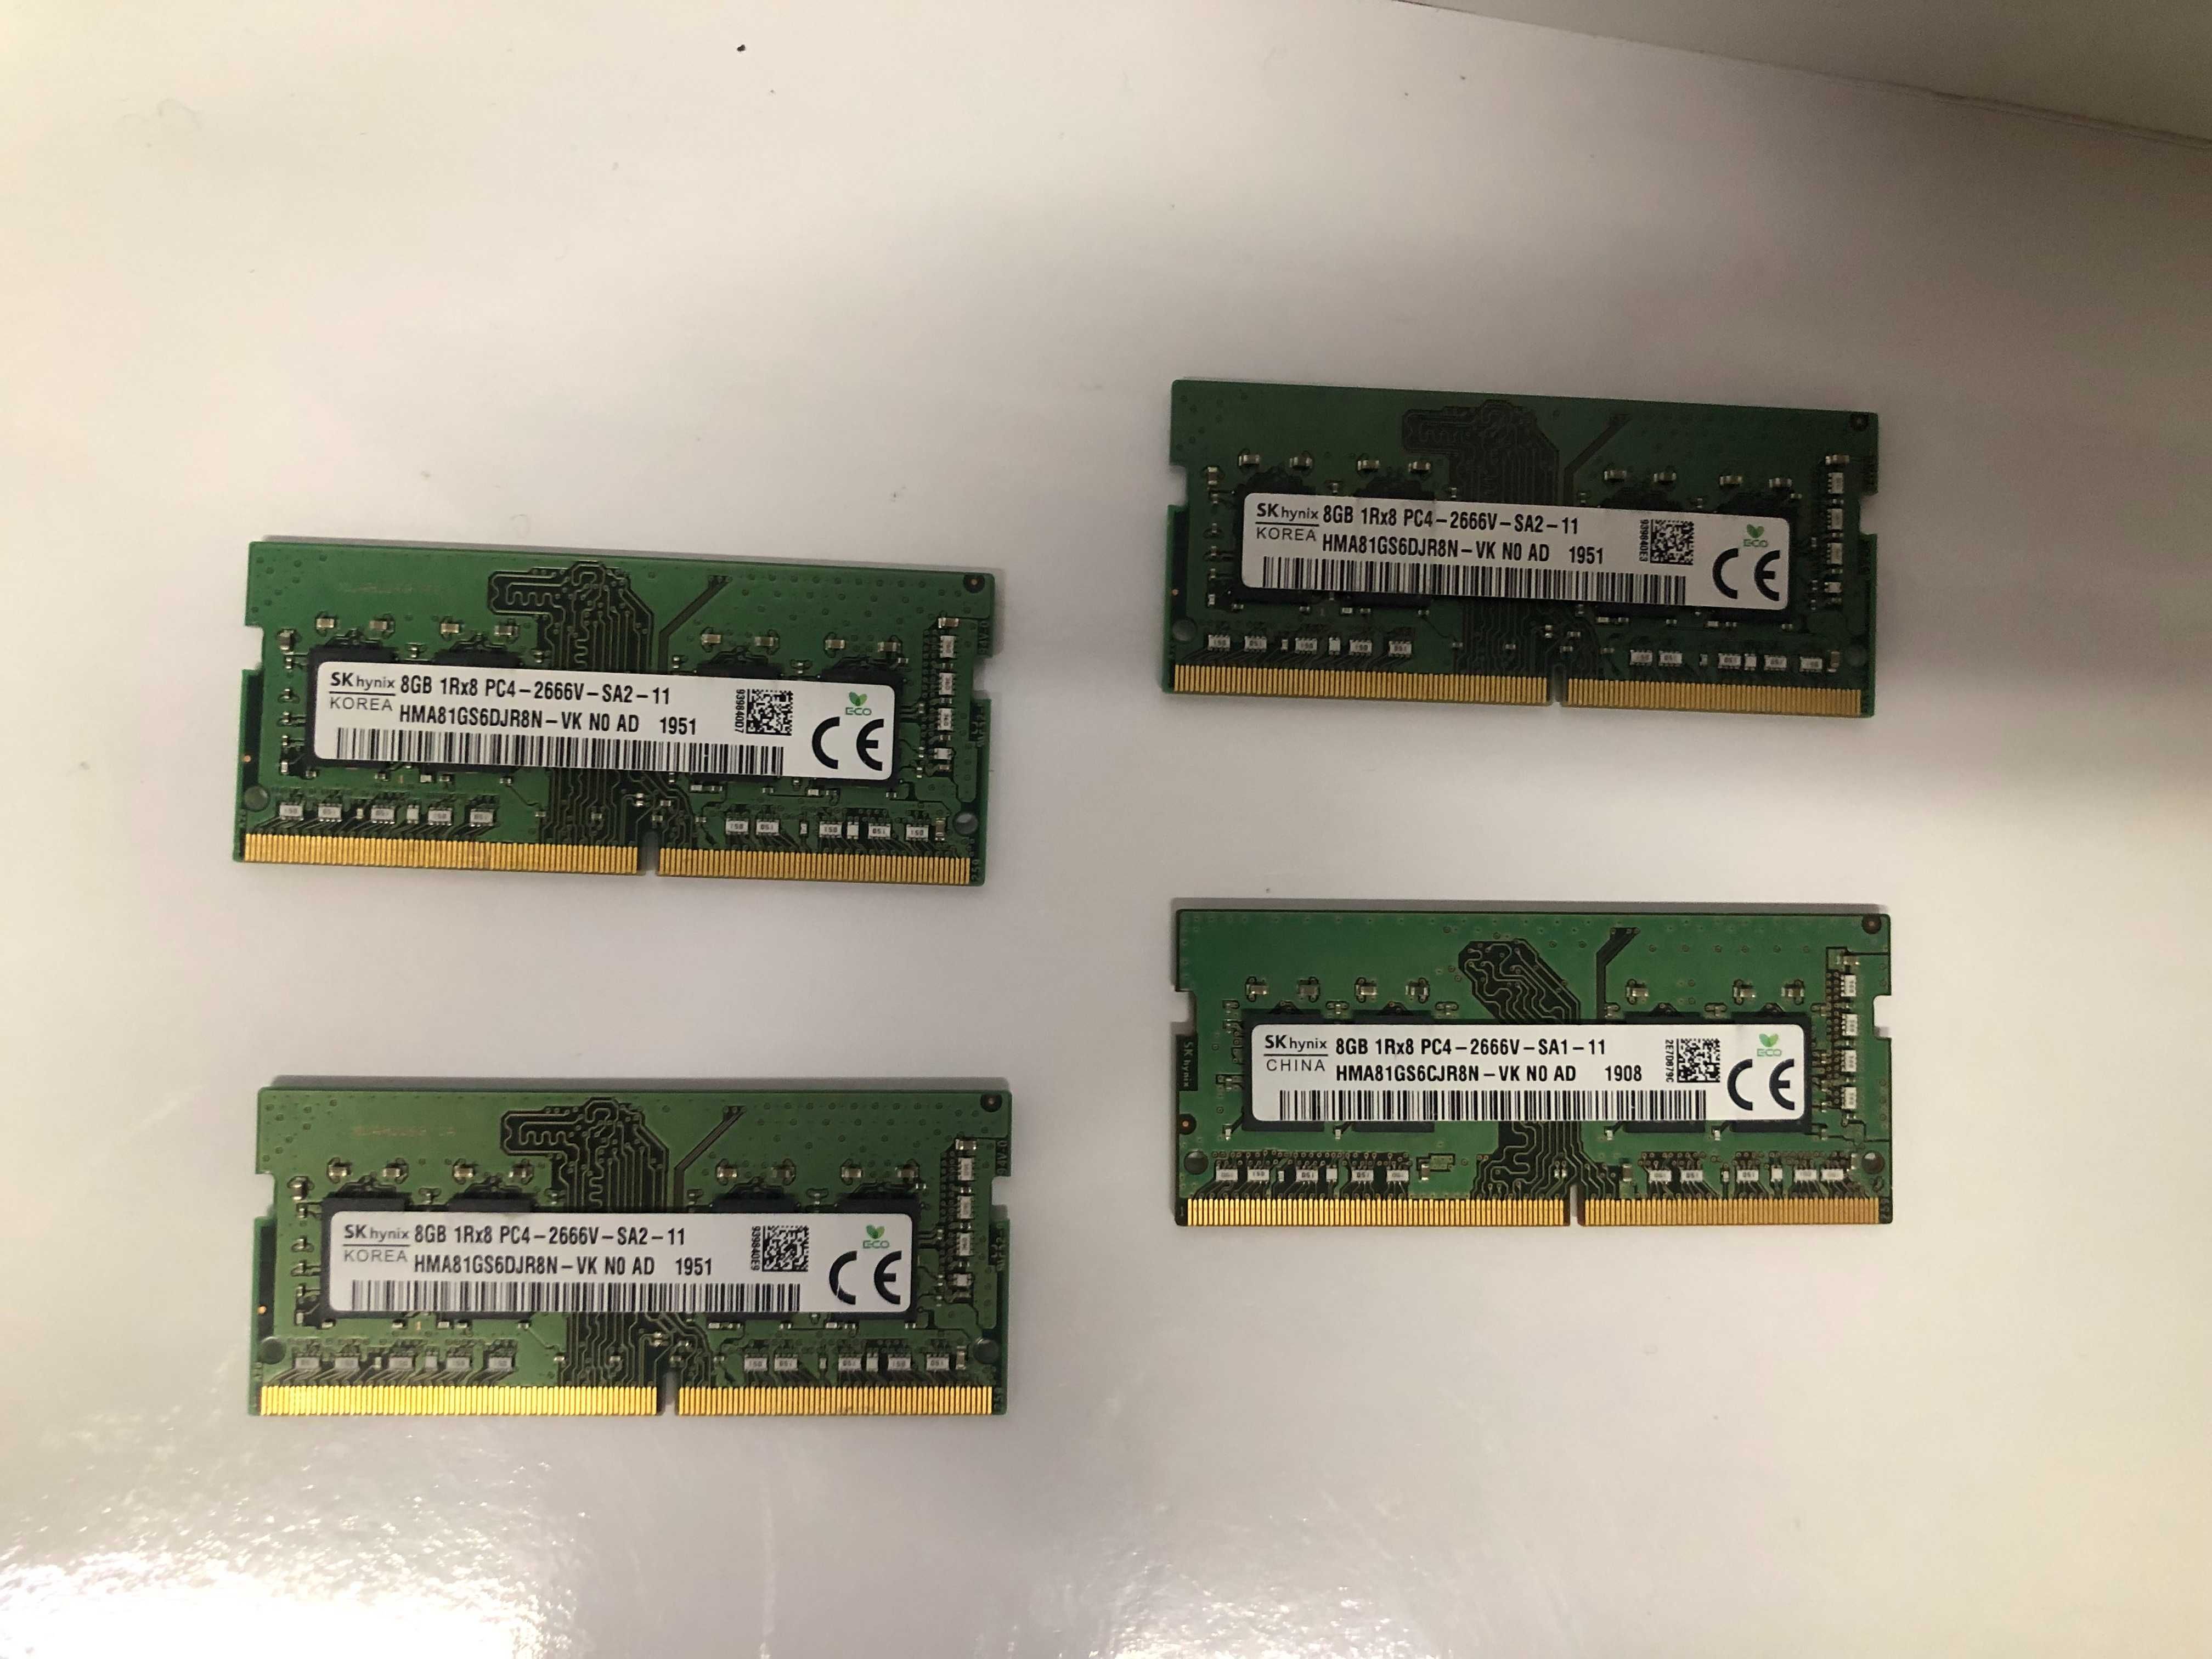 Memorii laptop Sodimm DDR4 8 Gb 2666 HYNIX HMA81GS6CJR8N, Garantie